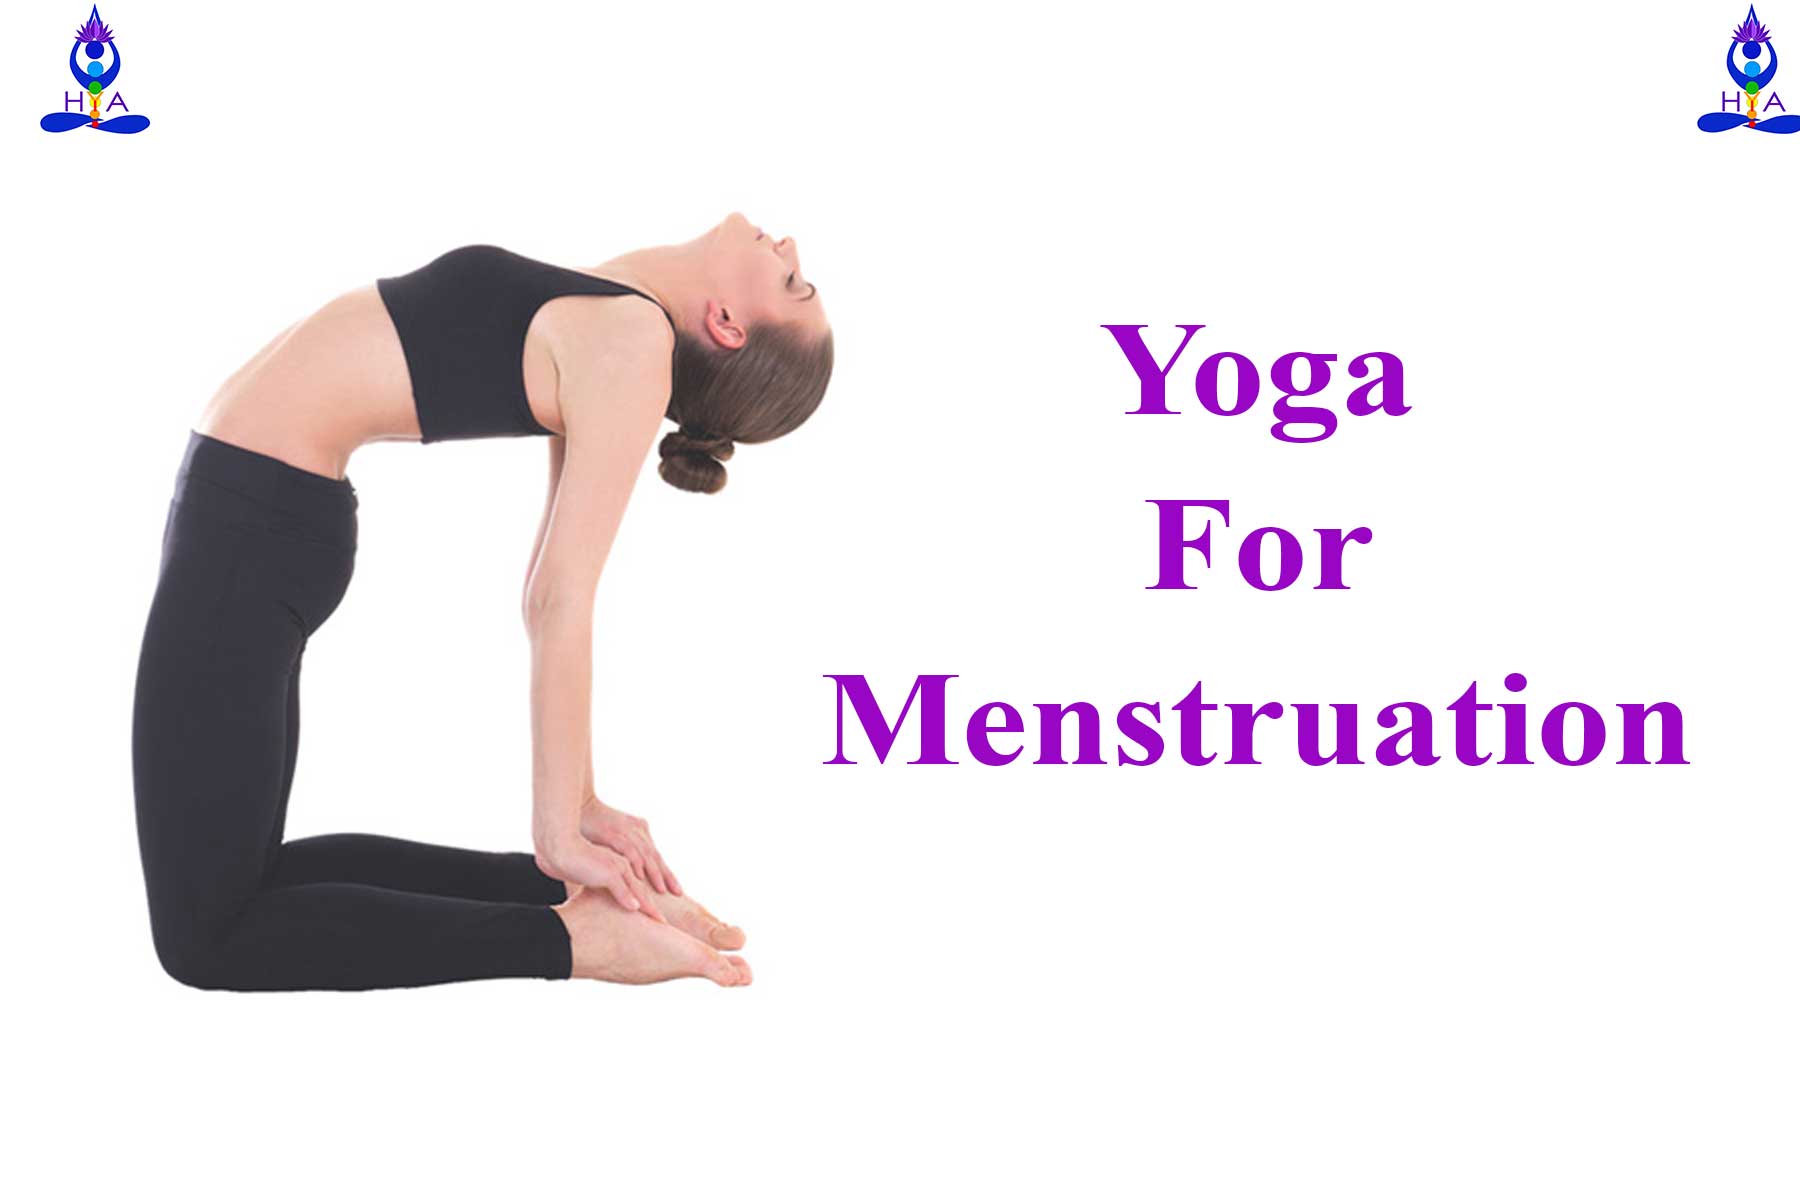 Yoga For Menstruation